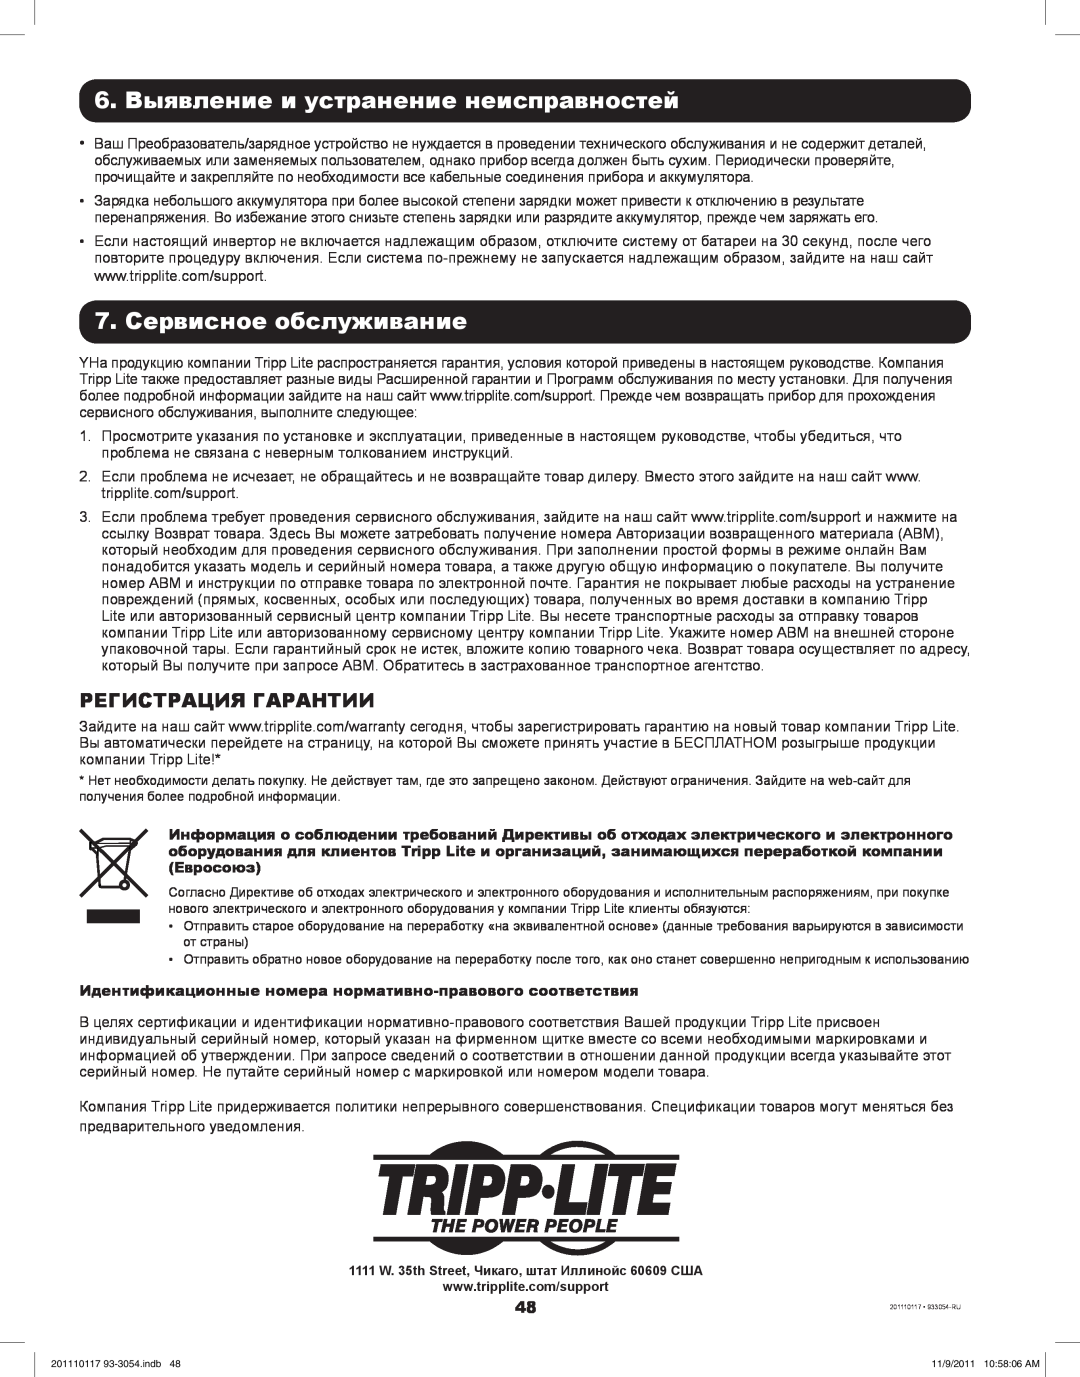 Tripp Lite APSX1012SW 6. Выявление и устранение неисправностей, 7. Сервисное обслуживание, Регистрация Гарантии 